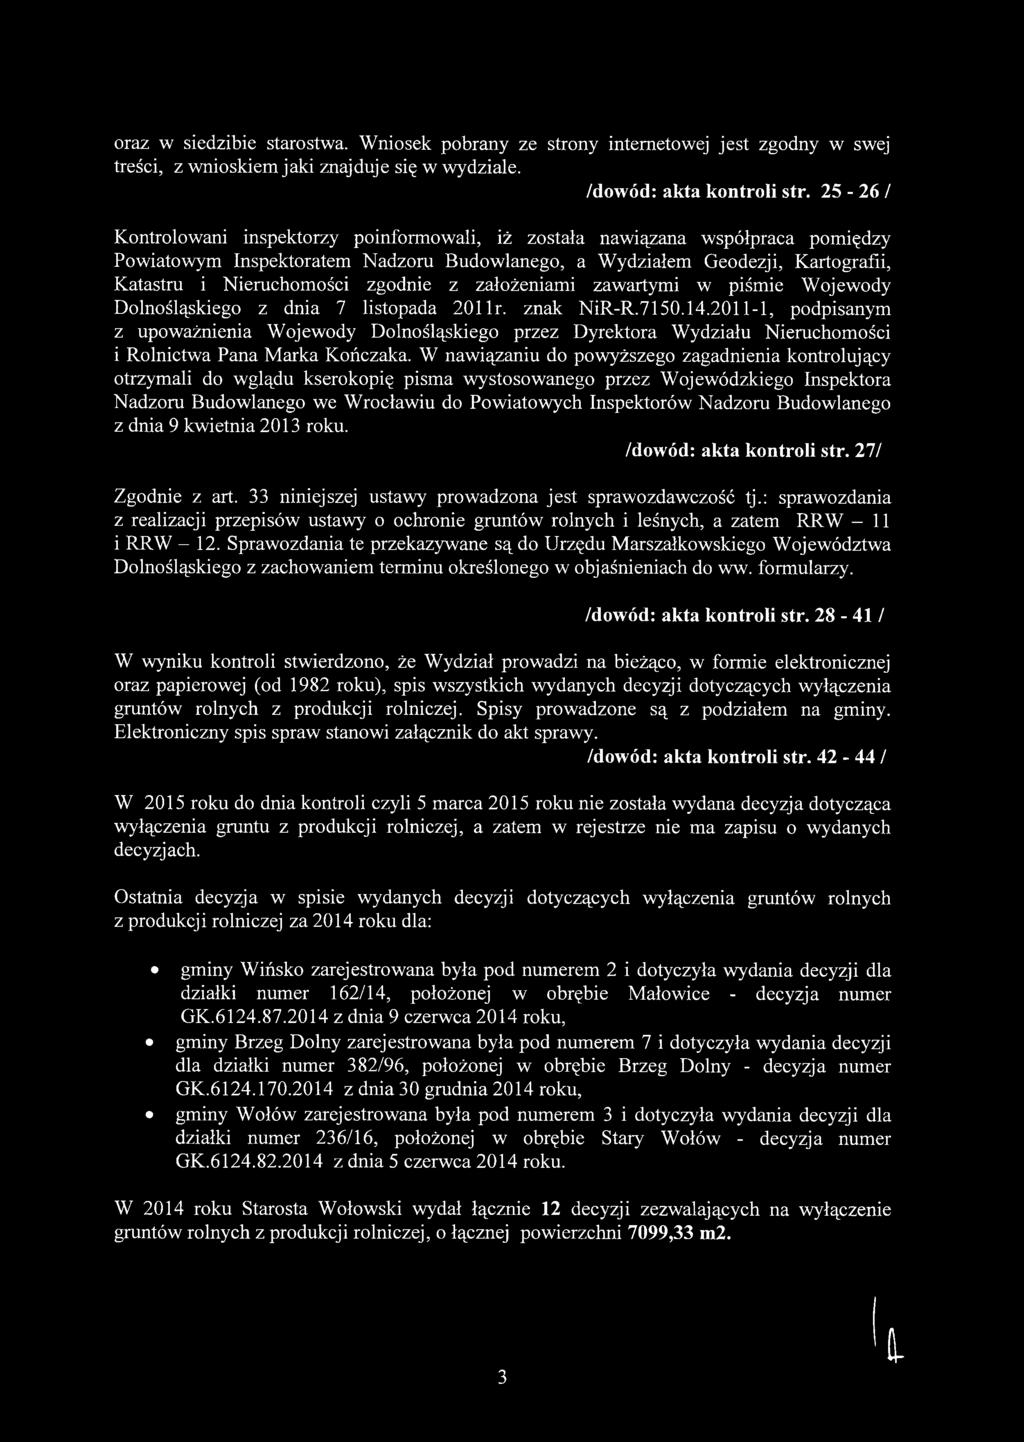 zgodnie z założeniami zawartymi w piśmie Wojewody Dolnośląskiego z dnia 7 listopada 201 lr. znak NiR-R.7150.14.